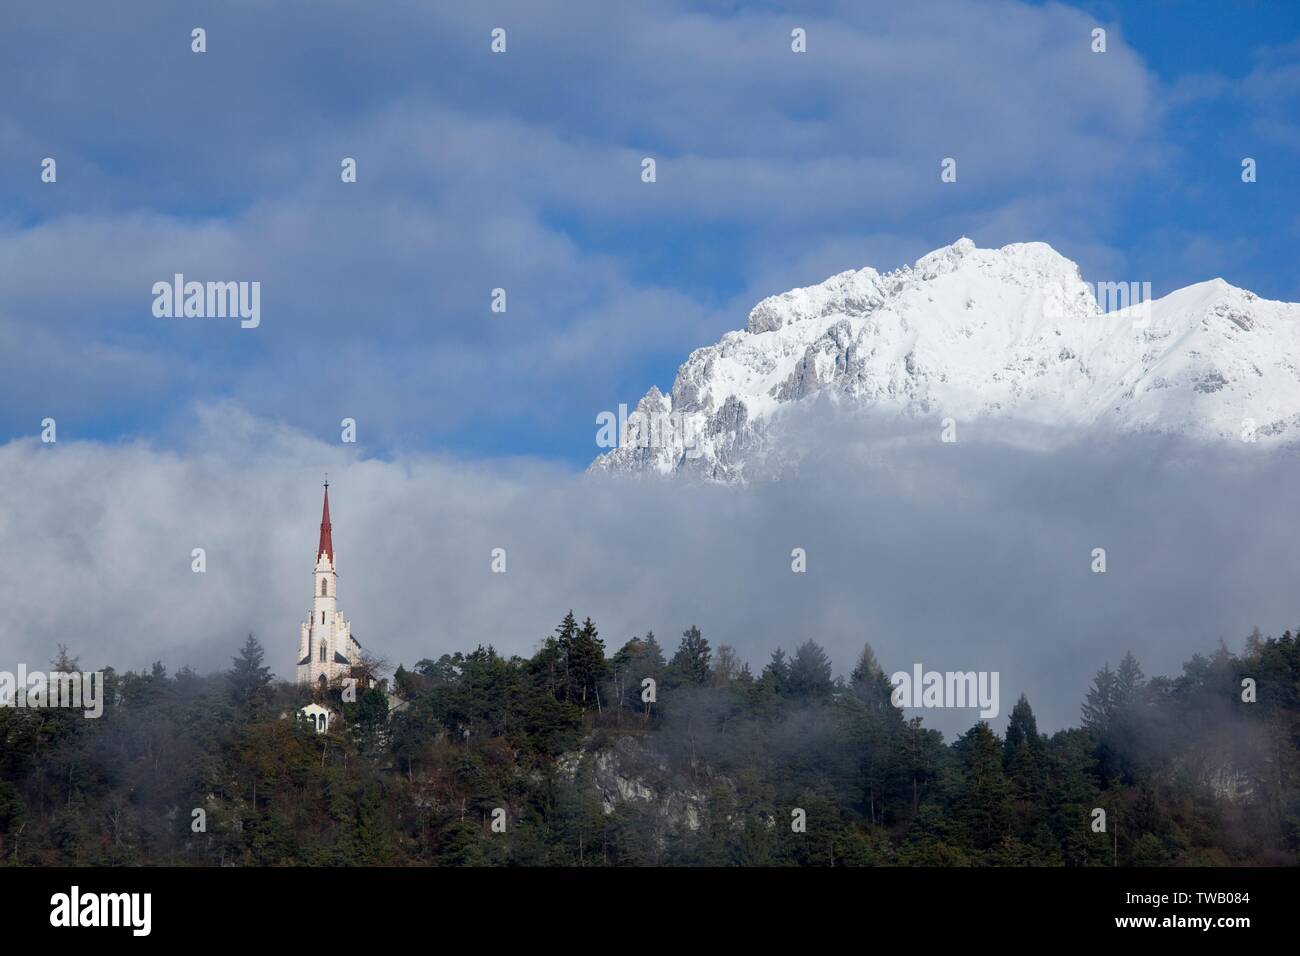 Austria, Tirolo, catena del Mieminger (catena montuosa), chiesa di Santa Maria Lochreboden. Foto Stock